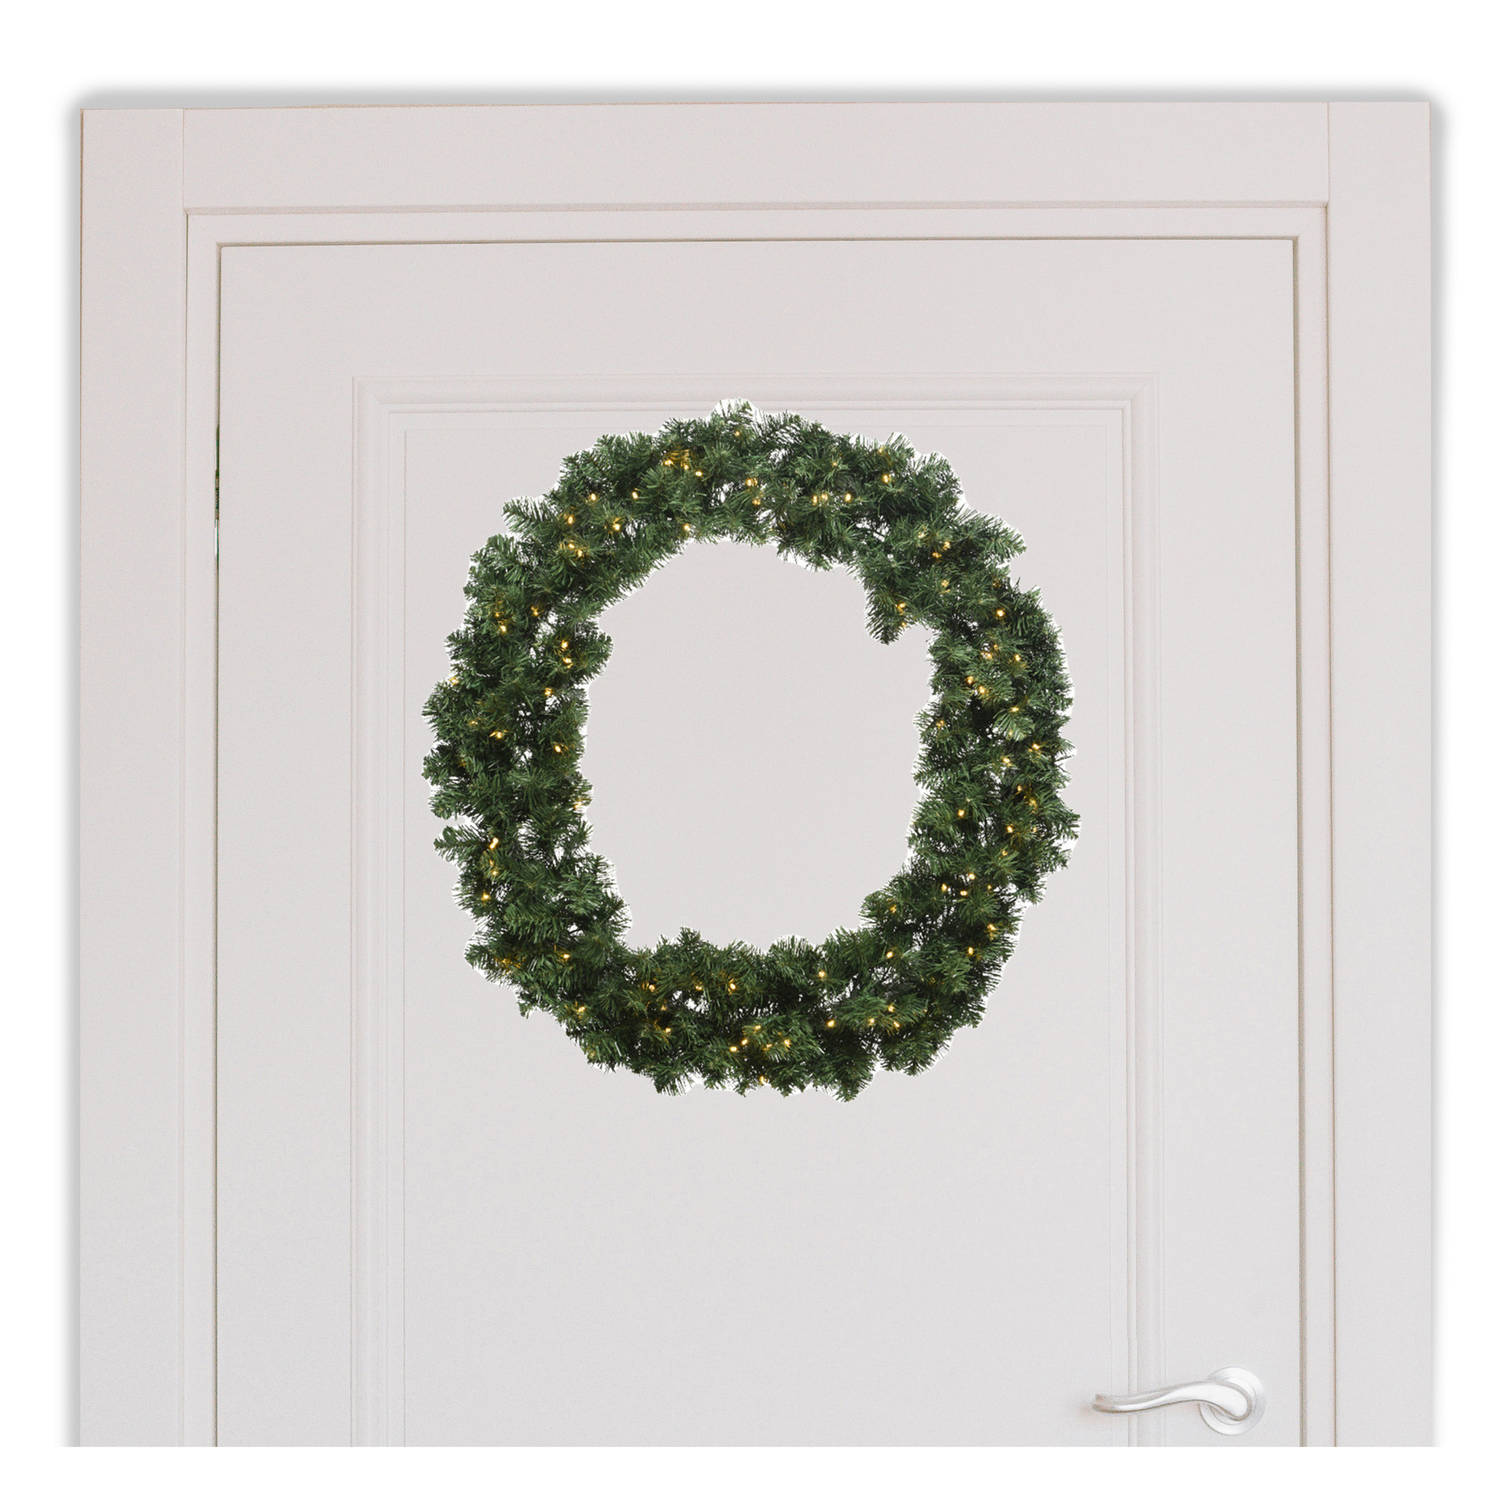 Kerstkrans-deurkrans met warm witte kerstverlichting D50 cm Kerstkransen